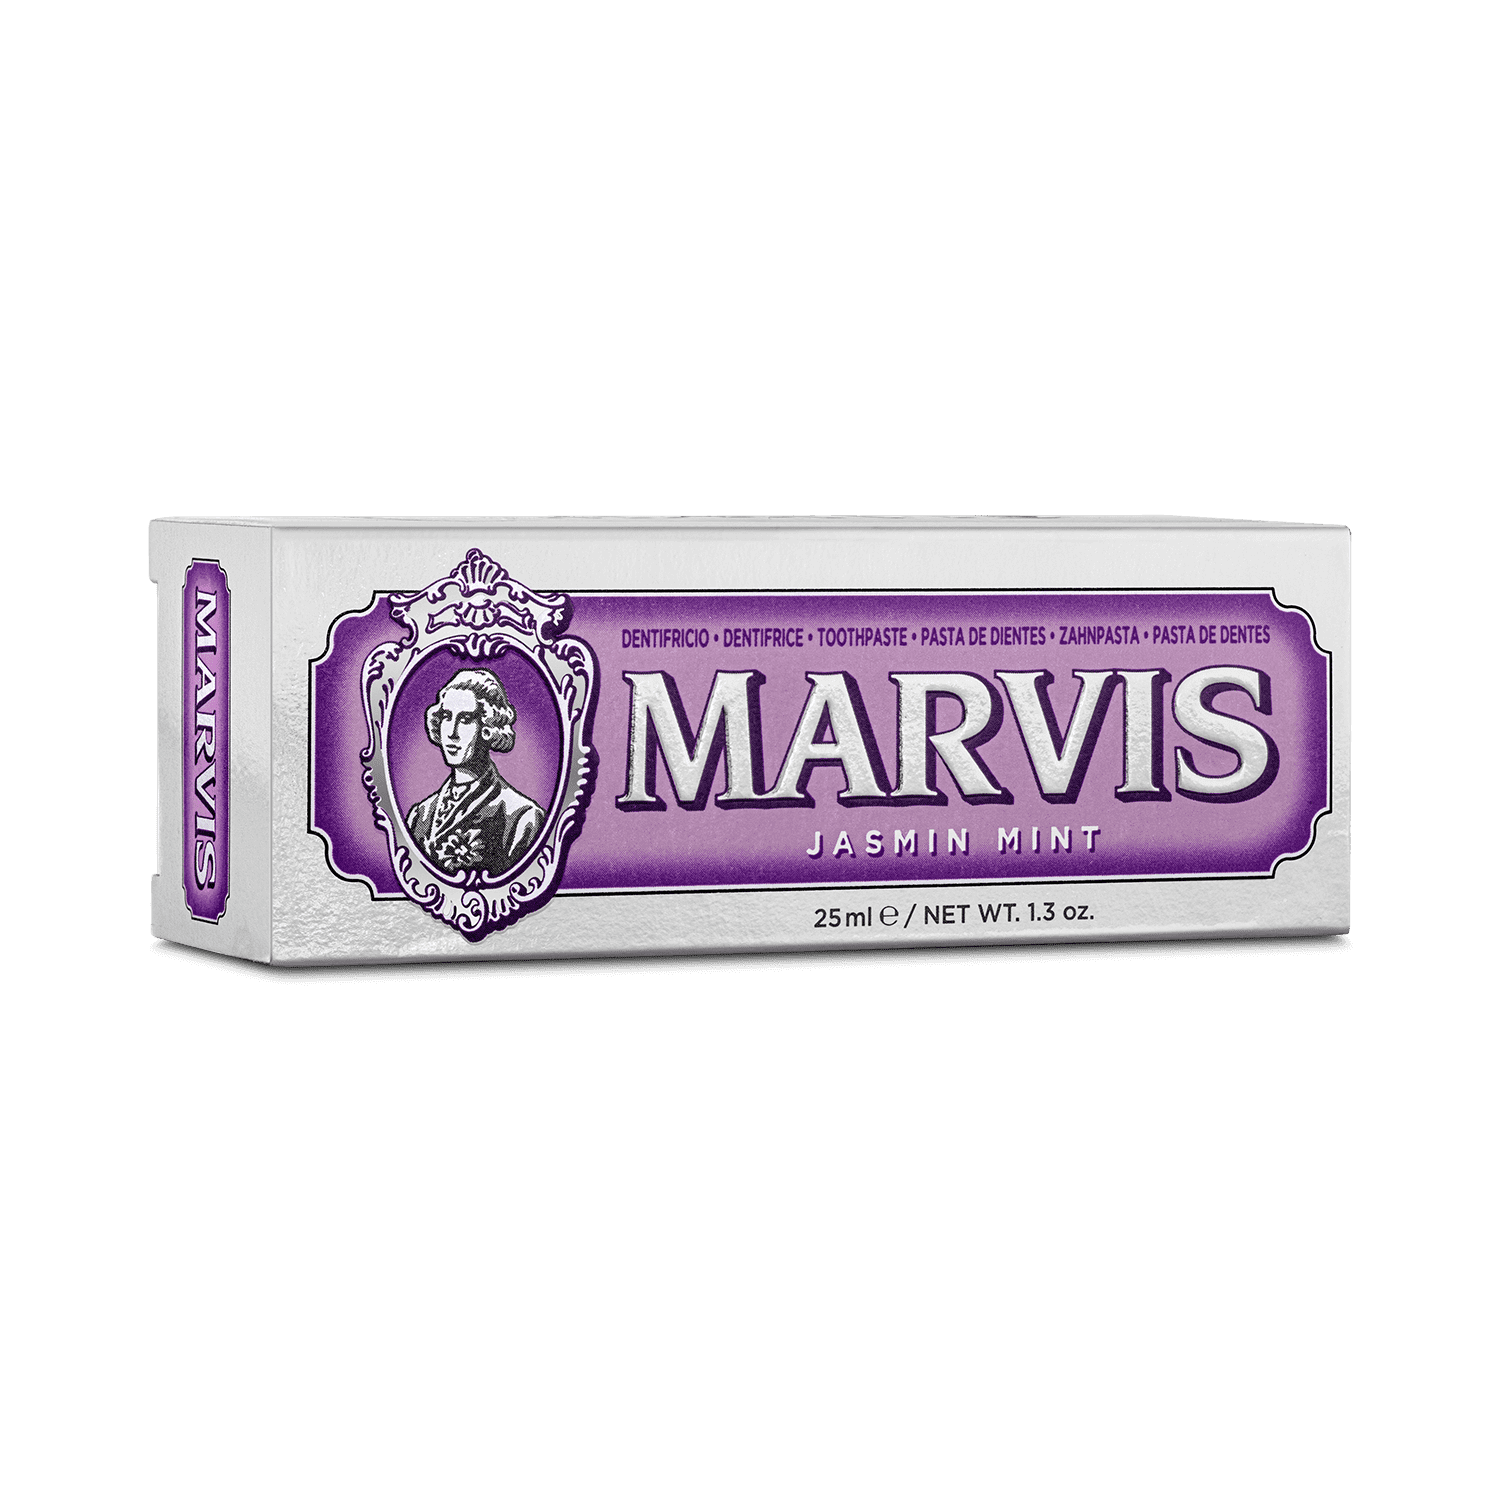 Marvis Jasmin Mint Toothpaste (25ml)